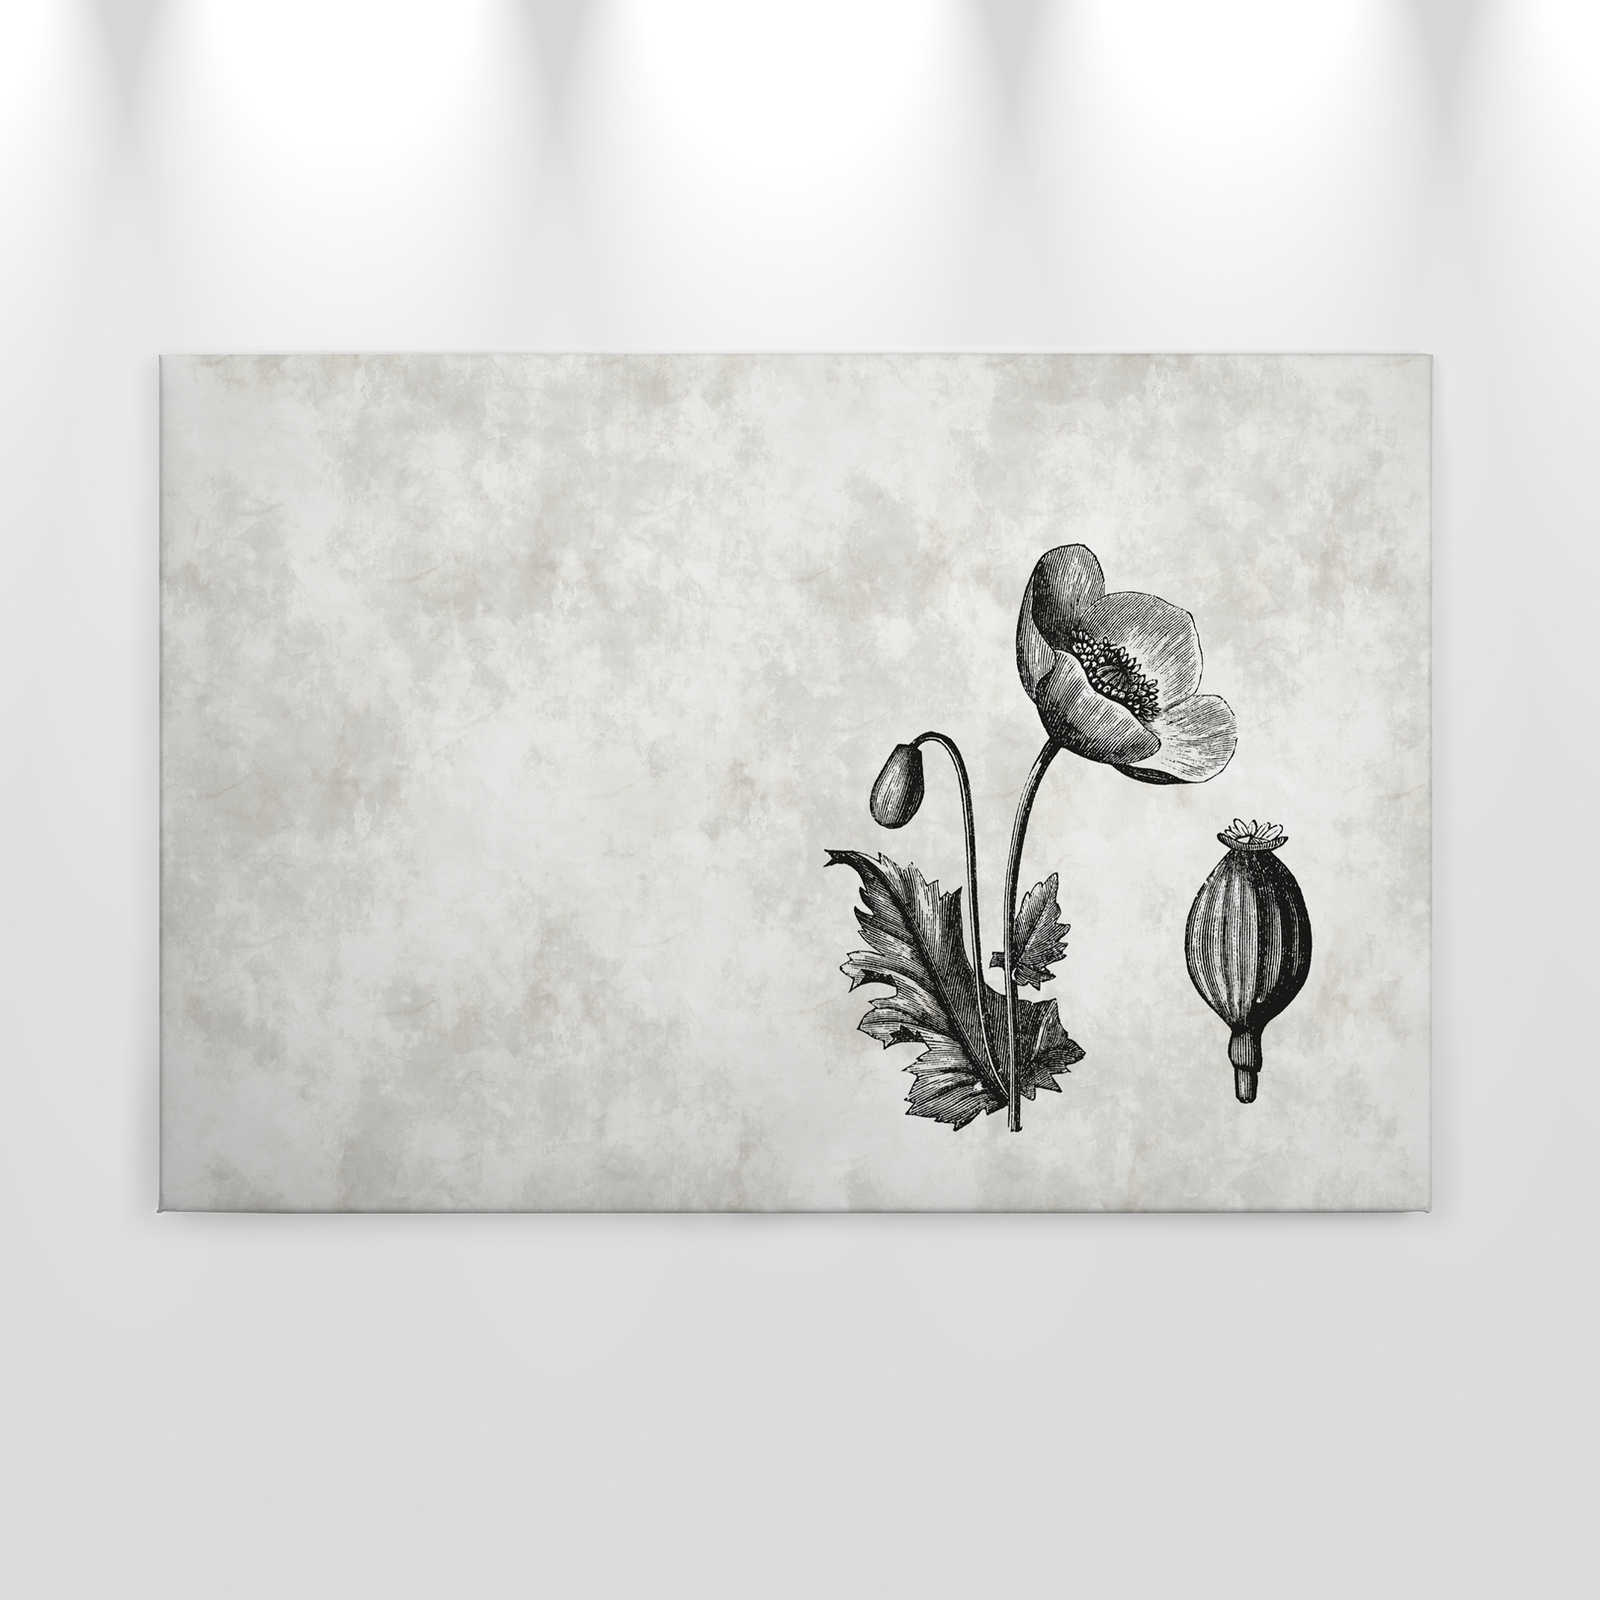             Toile noir et blanc Coquelicot Botanical Style - 0,90 m x 0,60 m
        